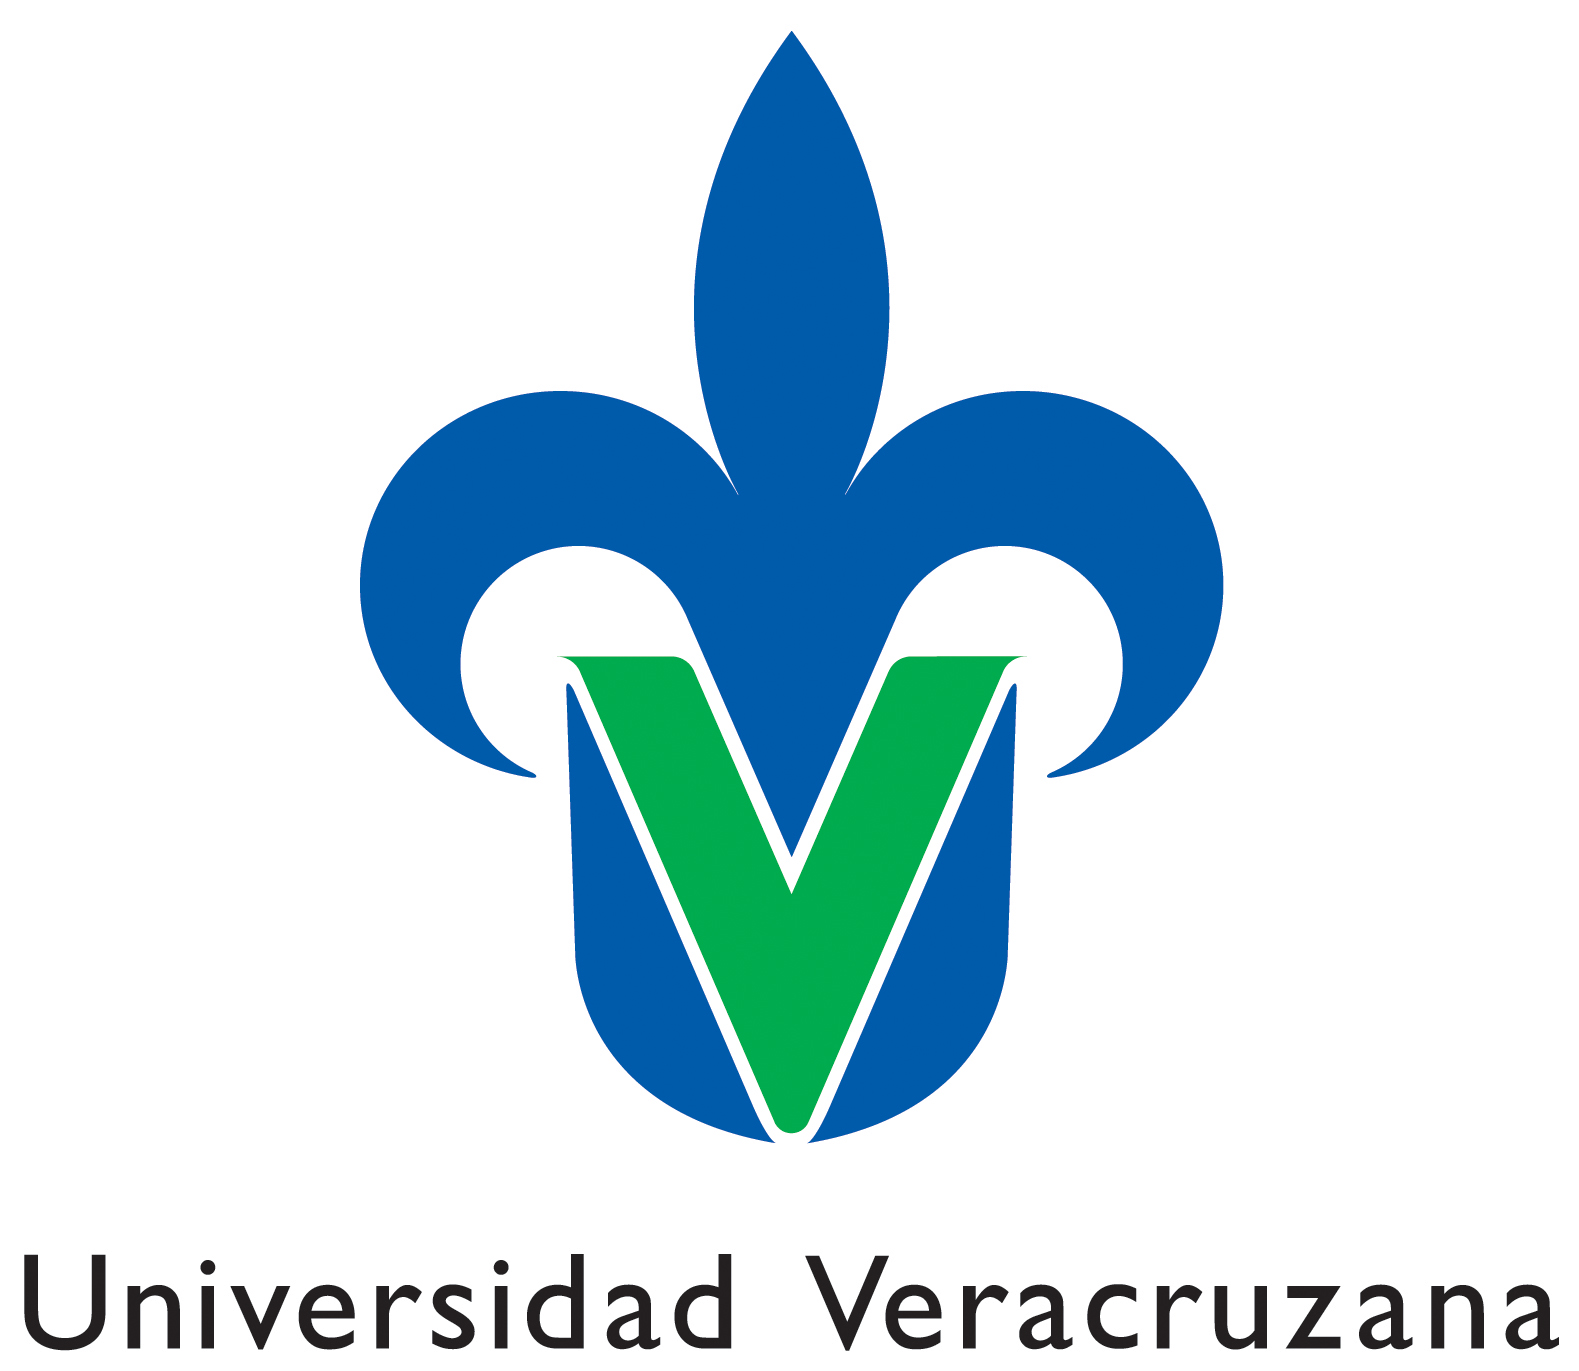 La Universidad Veracruzana invita al Diplomado en Cine Ambiental 2013